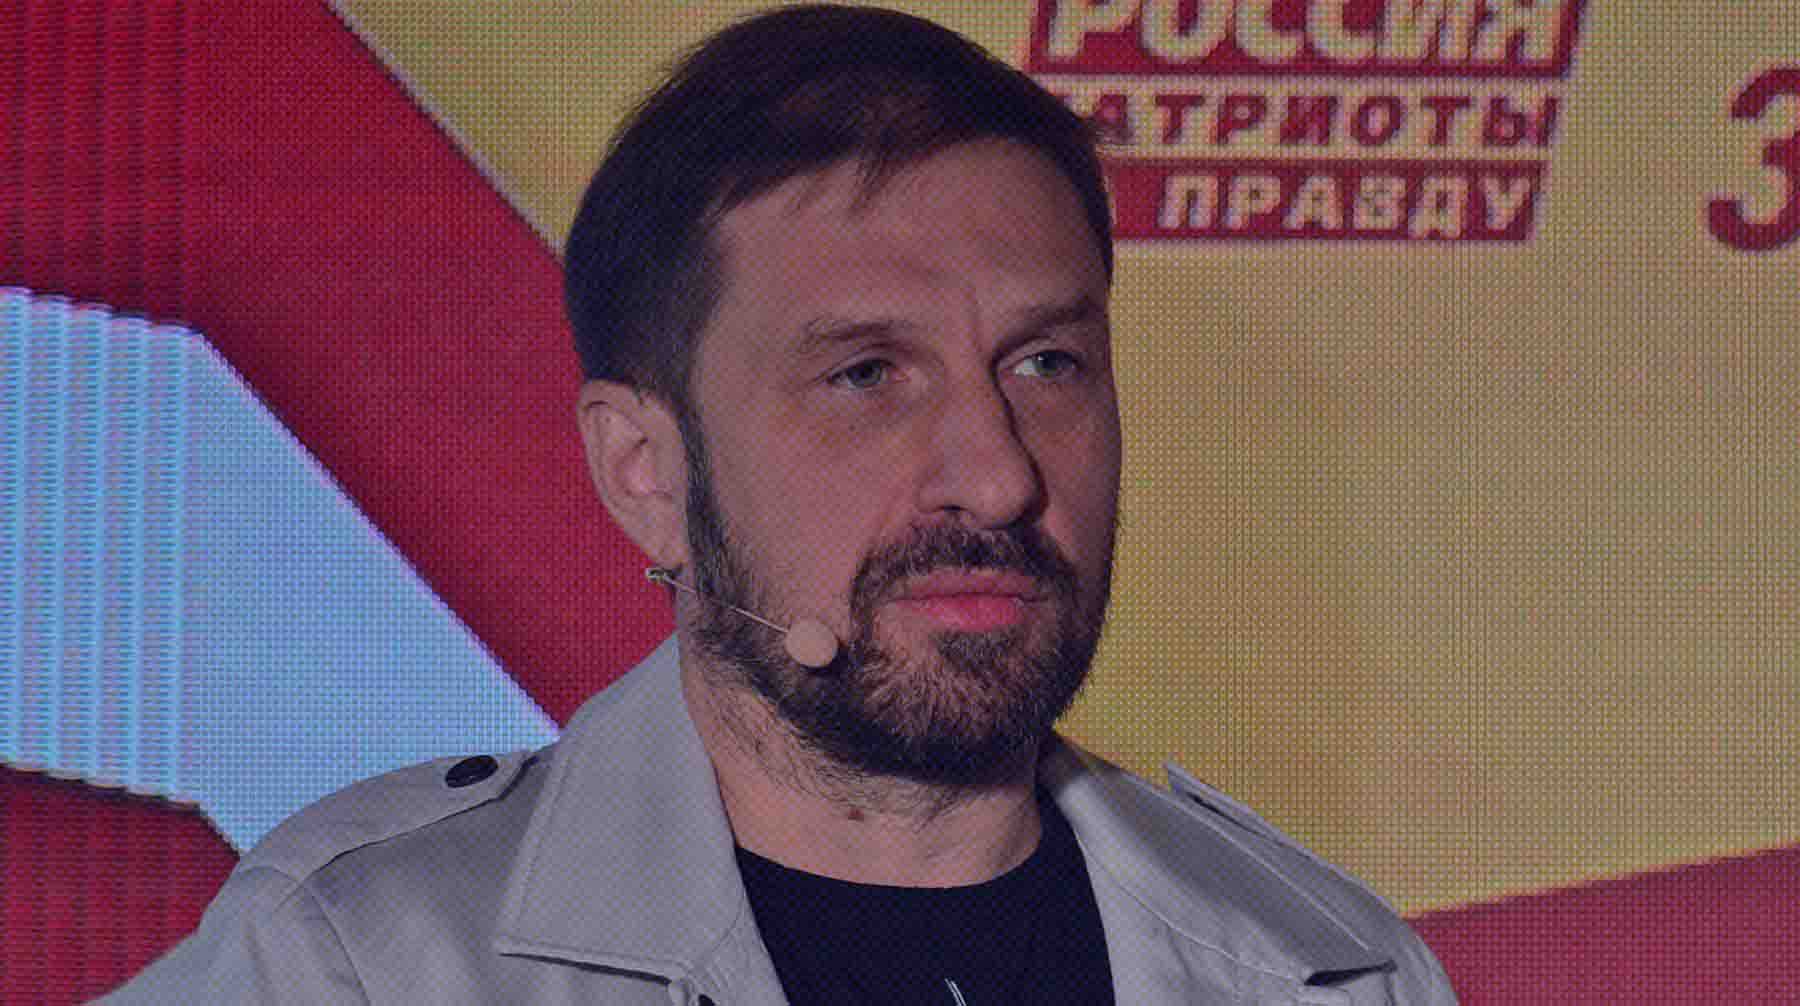 Парламентарий также направил письмо на имя главы ФСИН с просьбой содействовать проверке заключенных Дмитрий Кузнецов